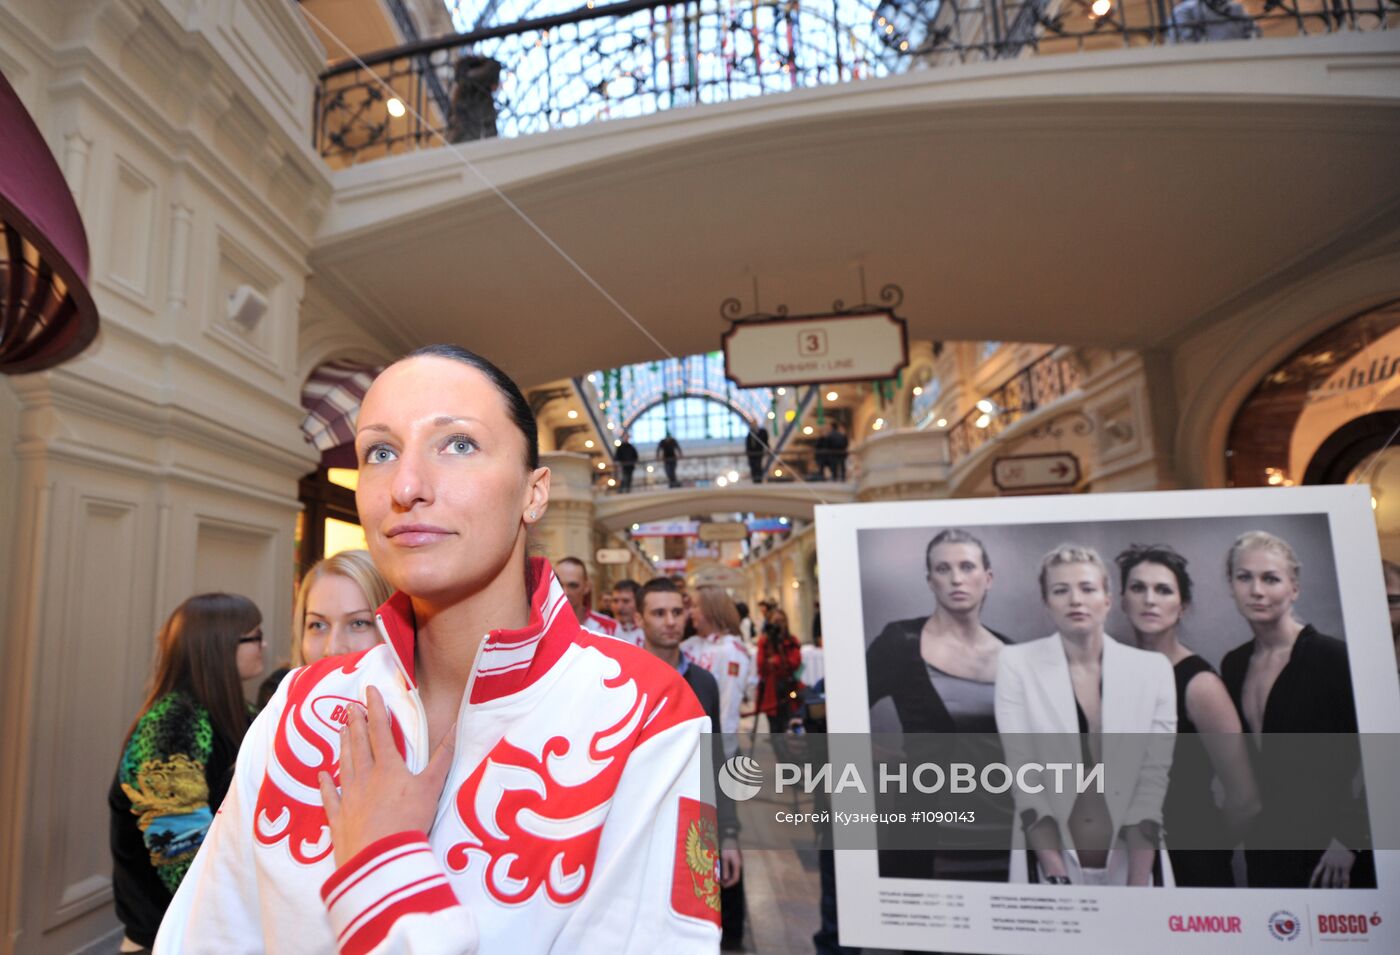 Открытие фотовыставки "Две стороны одной медали" в Москве